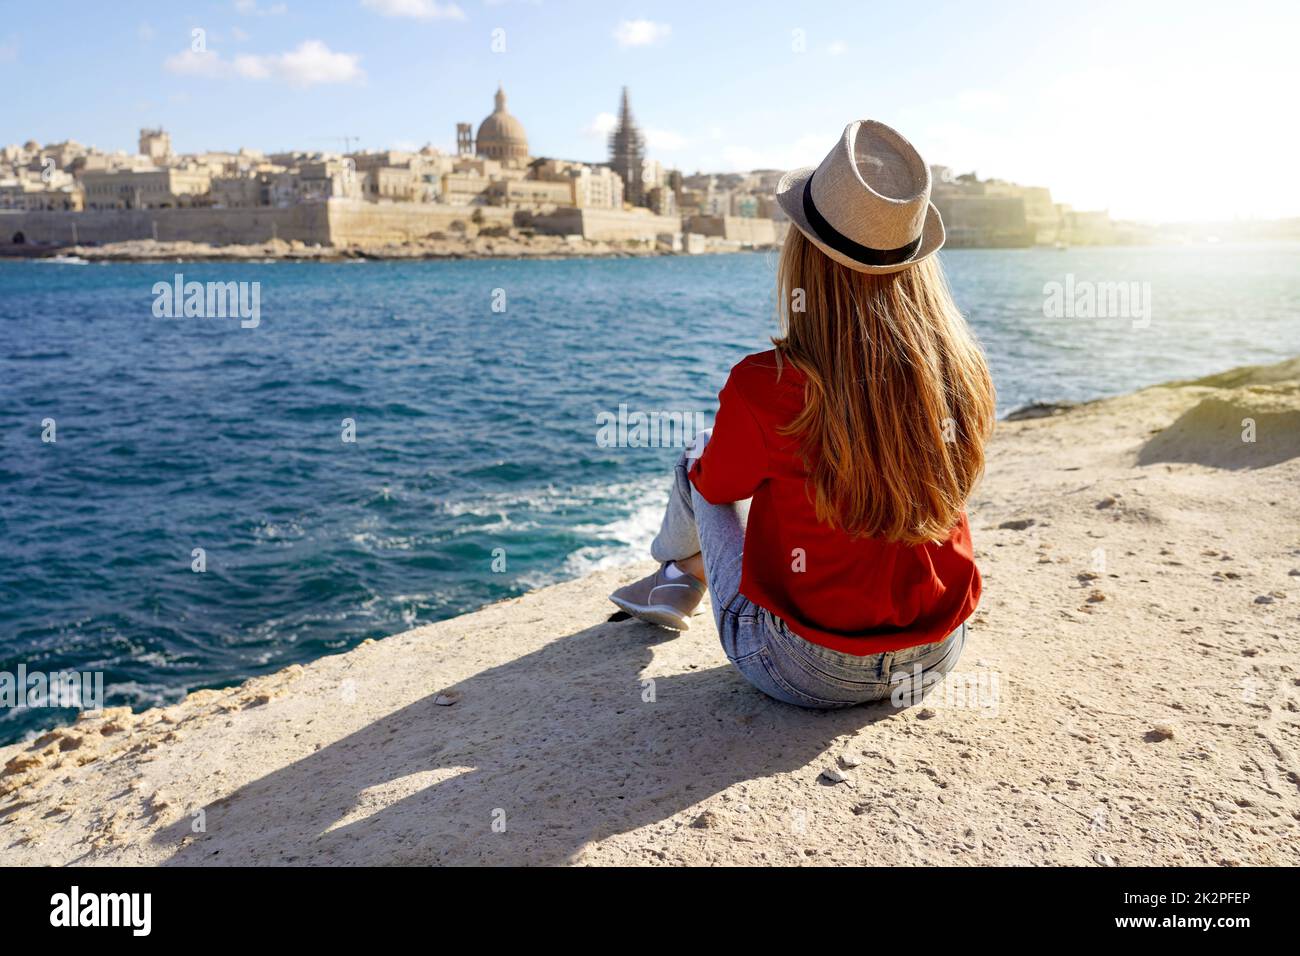 La ragazza si siede sul bordo del mare godendo il paesaggio stupefacente di la Valletta, Malta. Concetto di viaggio con persone indipendenti che svolgono attività all'aperto e la vita di vagabondo. Foto Stock